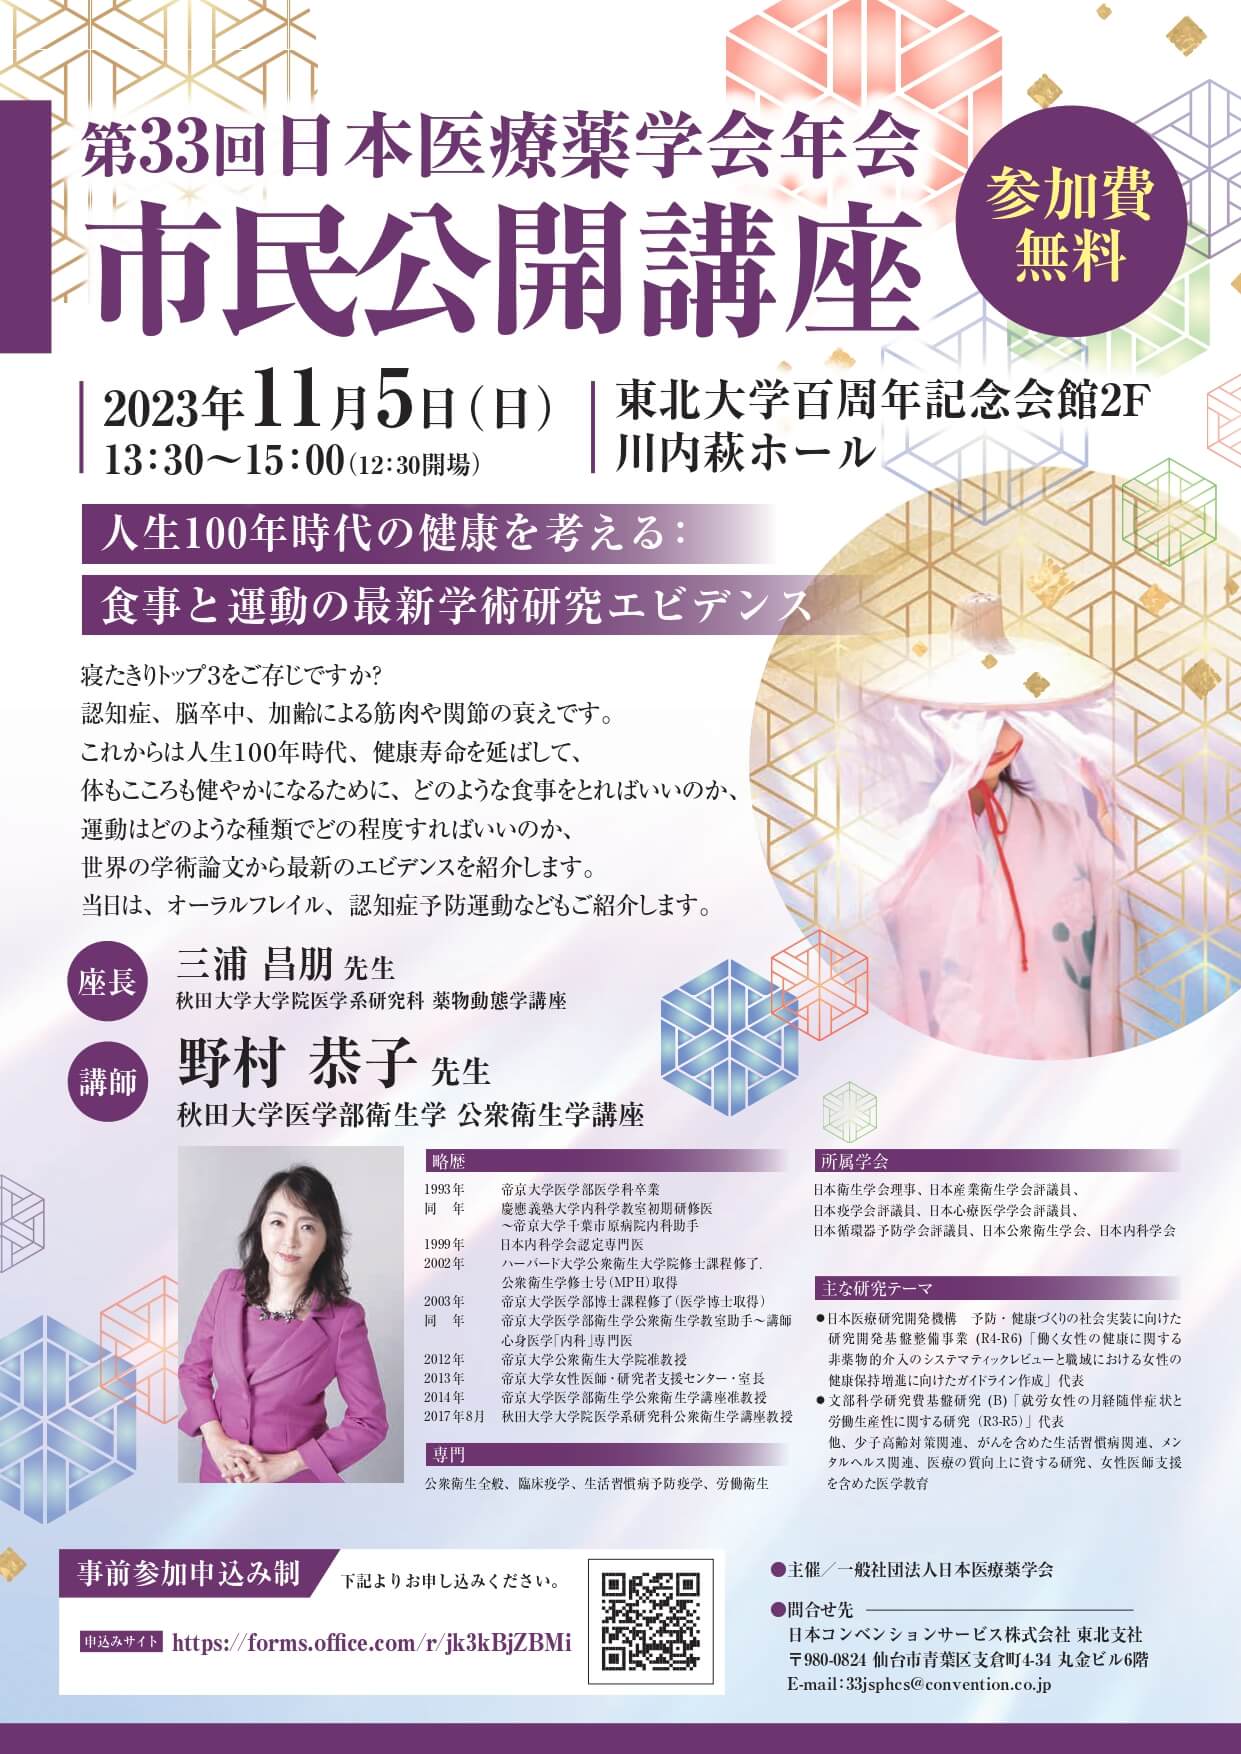 第33回日本医療薬学会年会 市民公開講座